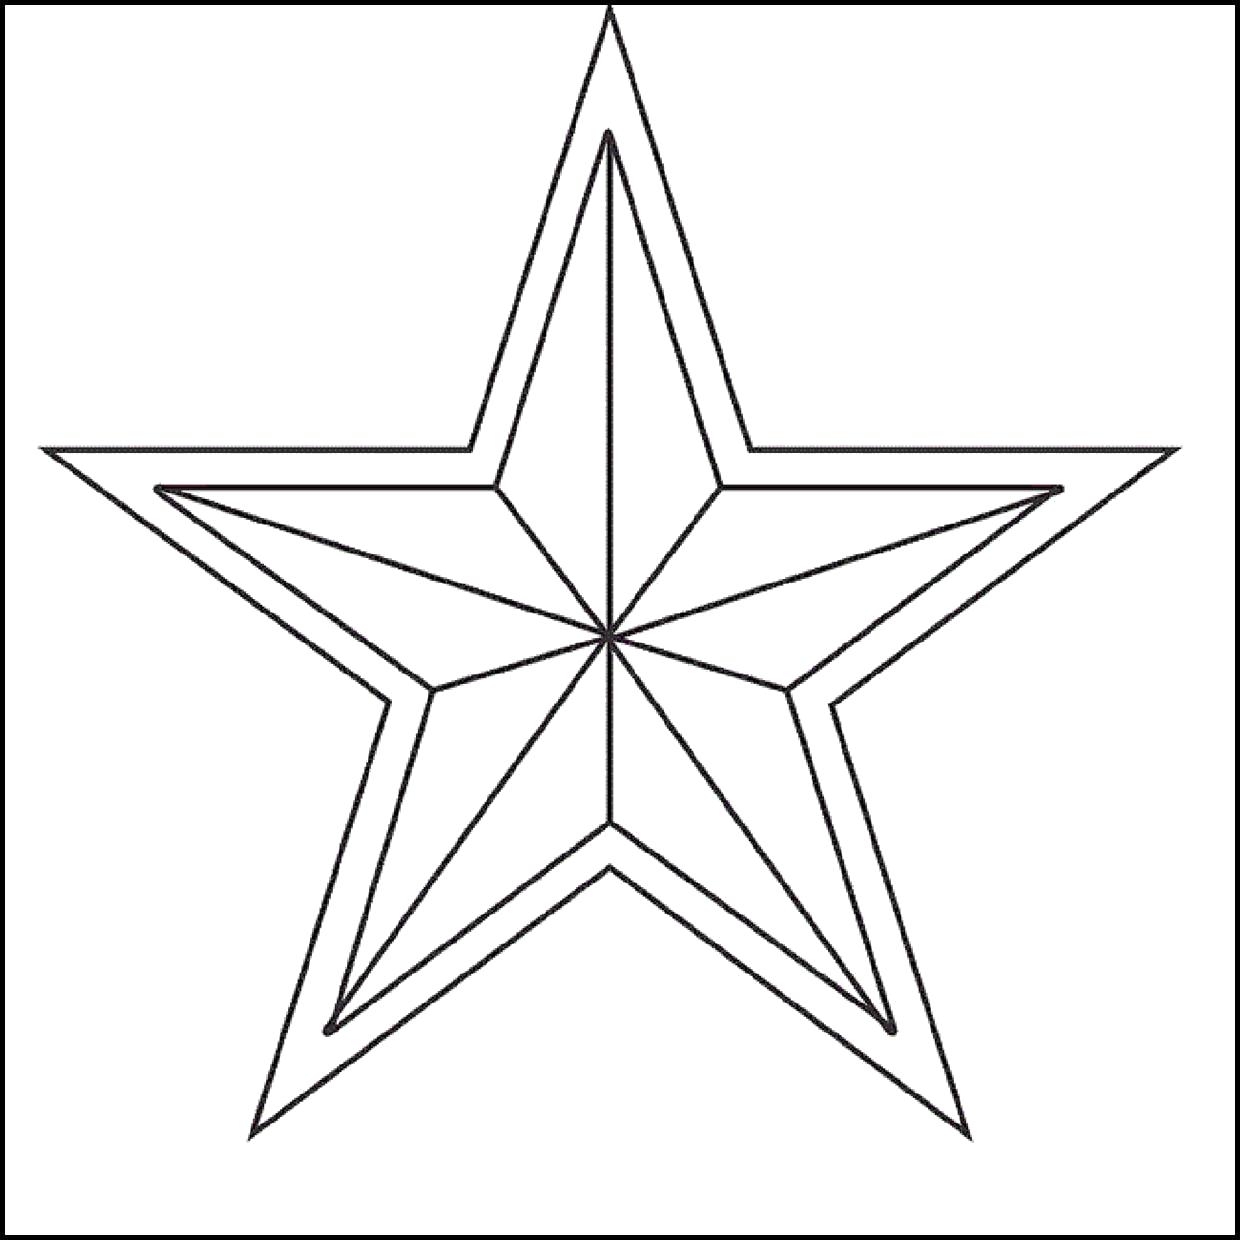 Раскраска  звезда. Скачать звезда, ромб, треугольник.  Распечатать геометрические фигуры